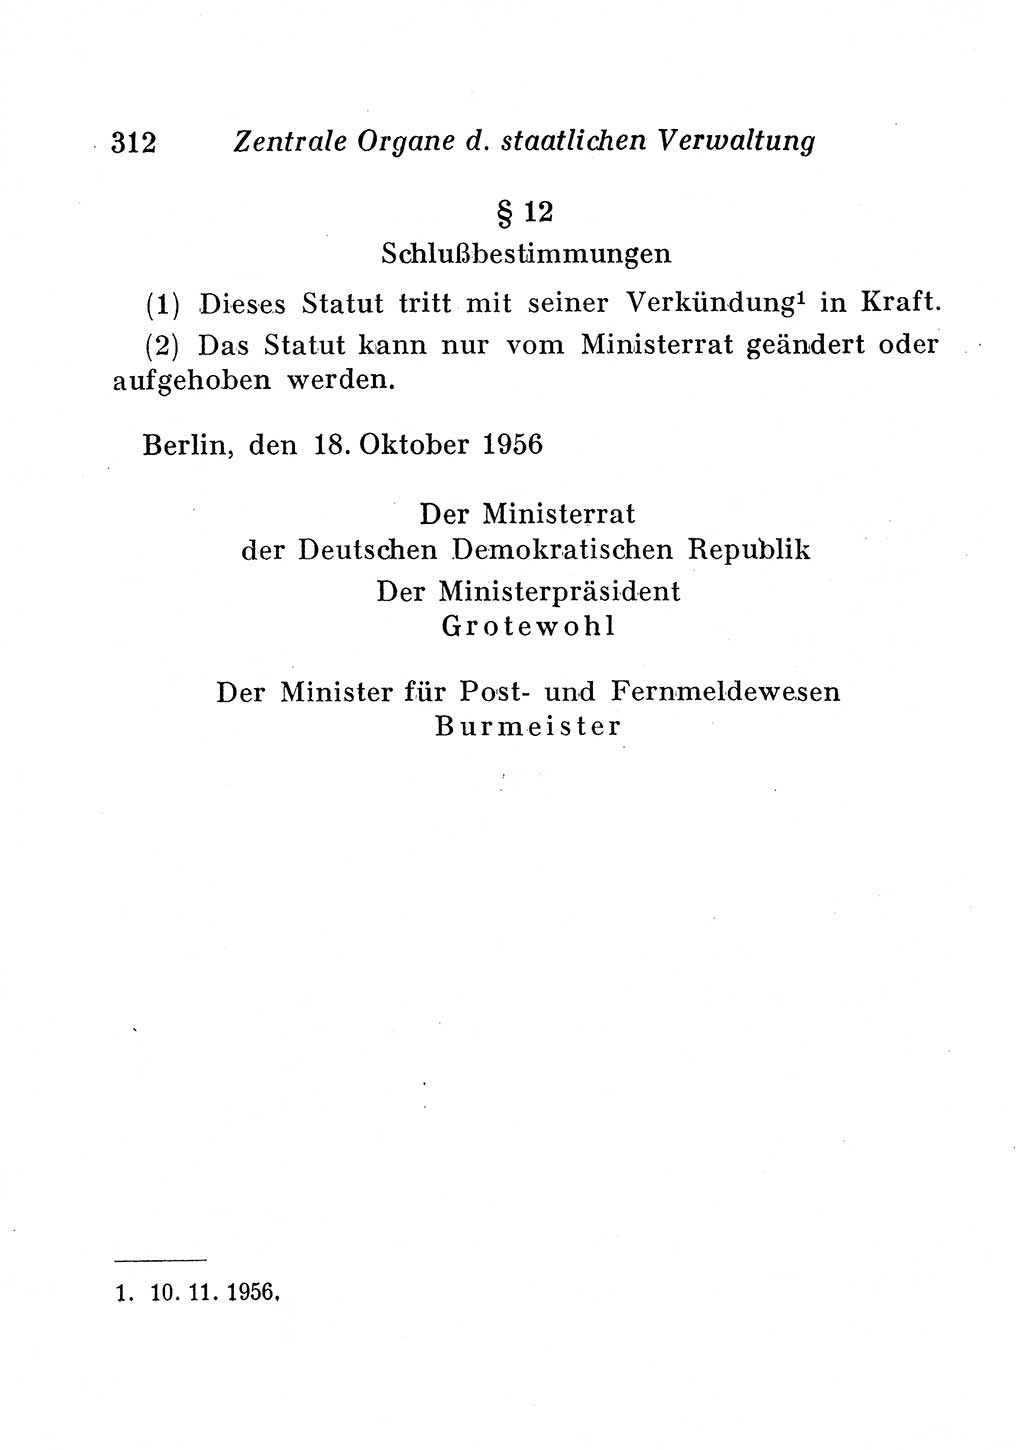 Staats- und verwaltungsrechtliche Gesetze der Deutschen Demokratischen Republik (DDR) 1958, Seite 312 (StVerwR Ges. DDR 1958, S. 312)